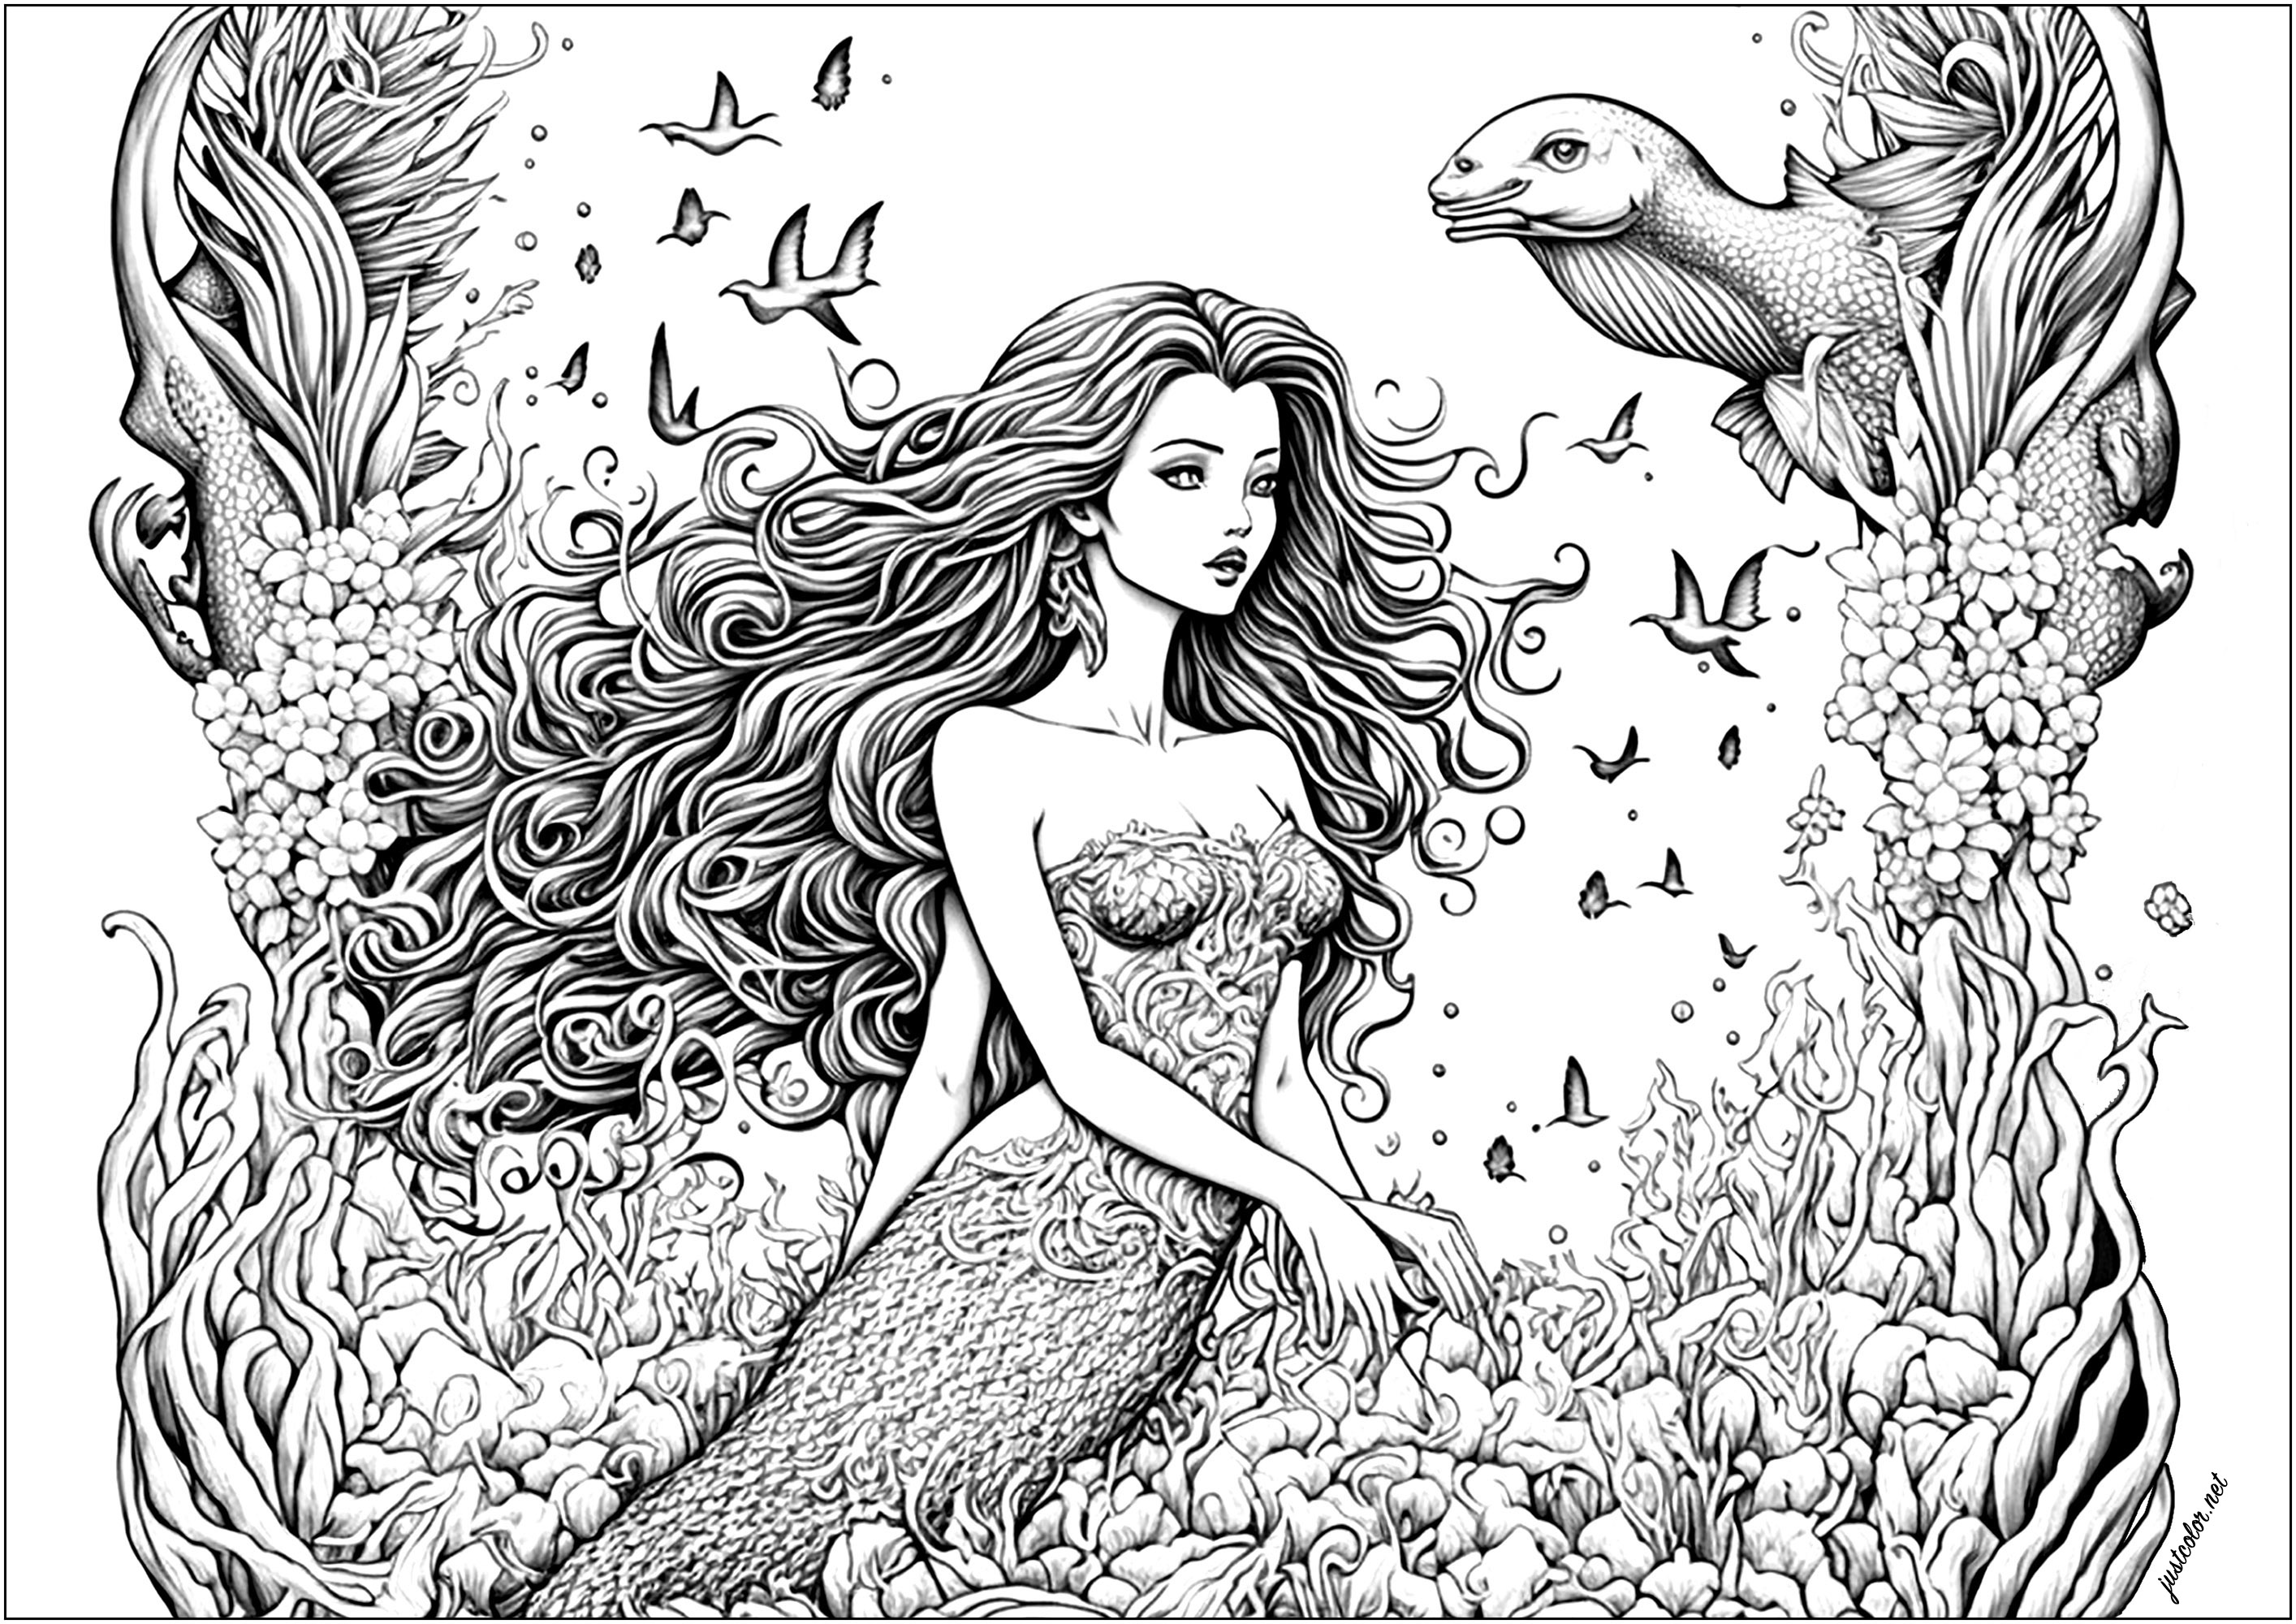 Eine Meerjungfrau saß auf Korallen im Ozean, umgeben von Fischen. Sie schwimmen spielerisch um sie herum, ihre leuchtenden Schuppen glitzern im Sonnenlicht, während sie lächelt und die Hand ausstreckt, um ihre Köpfe sanft zu streicheln.